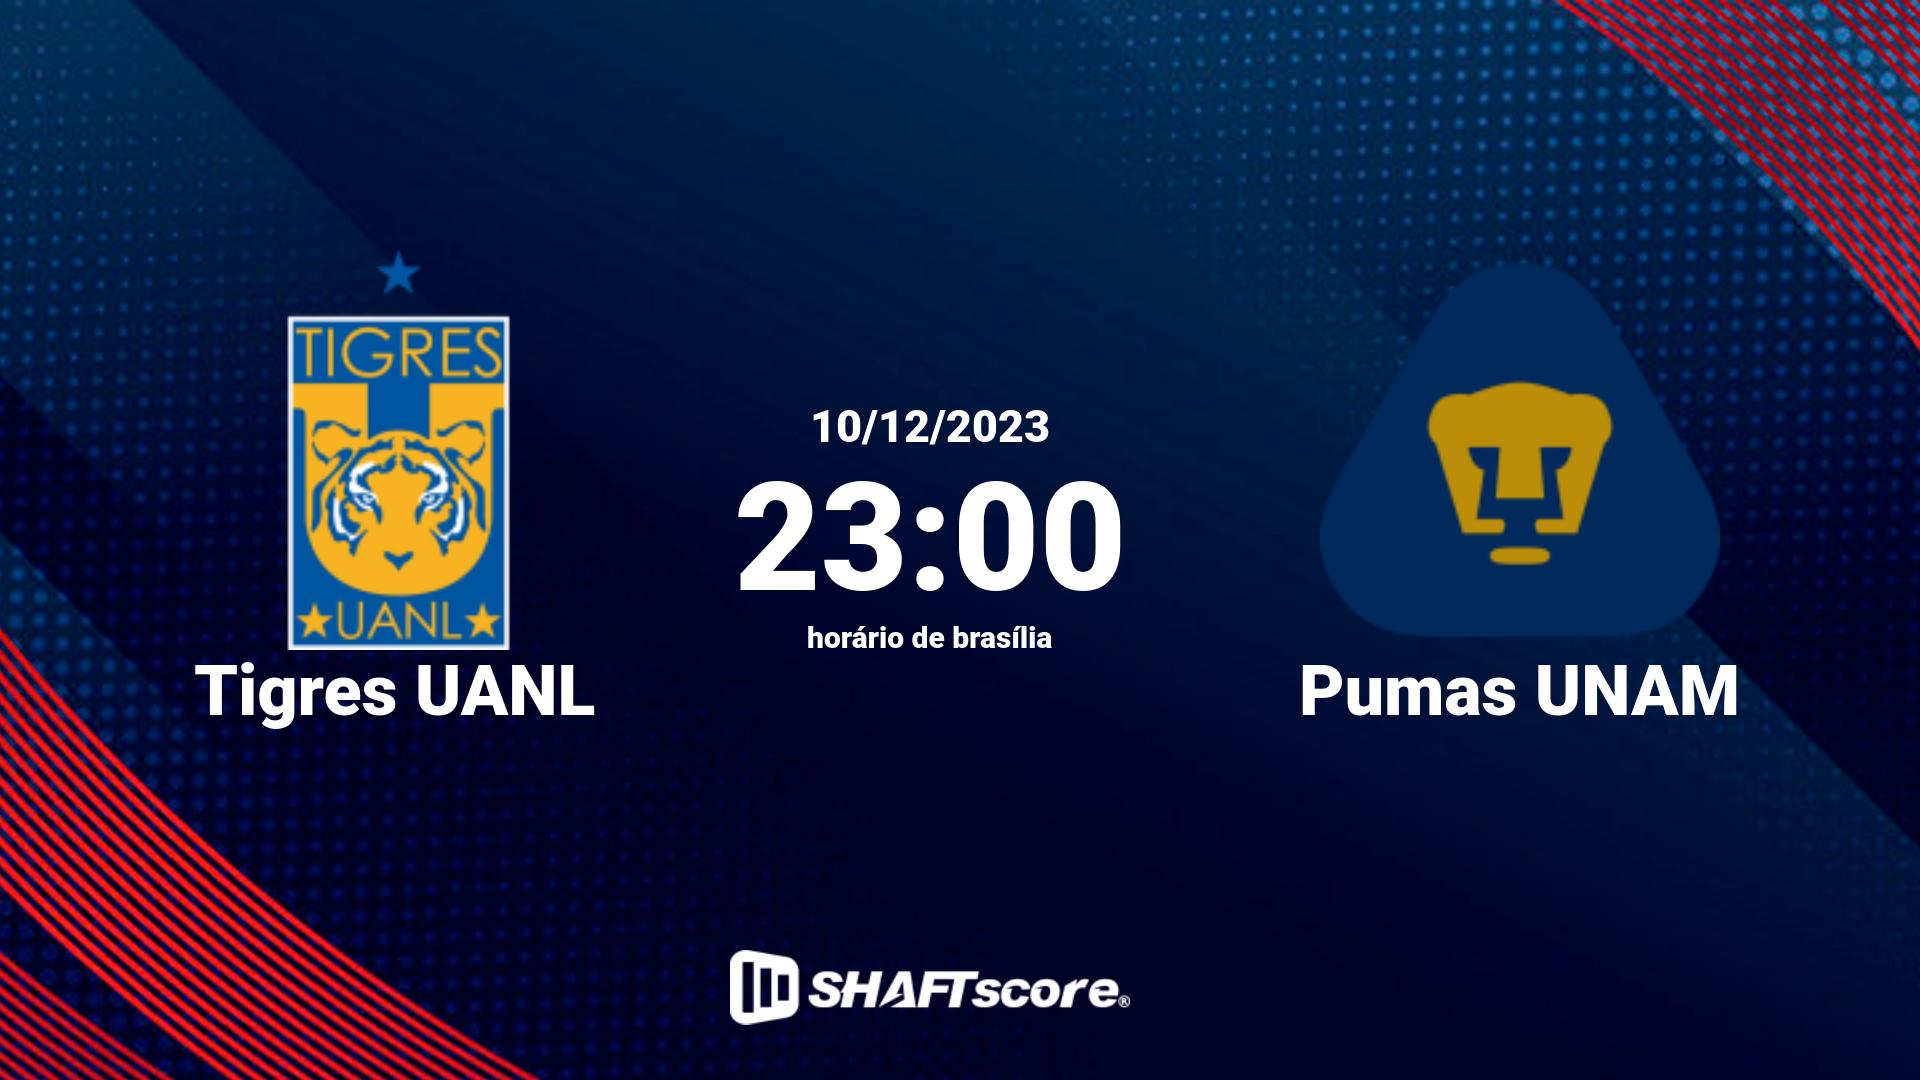 Estatísticas do jogo Tigres UANL vs Pumas UNAM 10.12 23:00